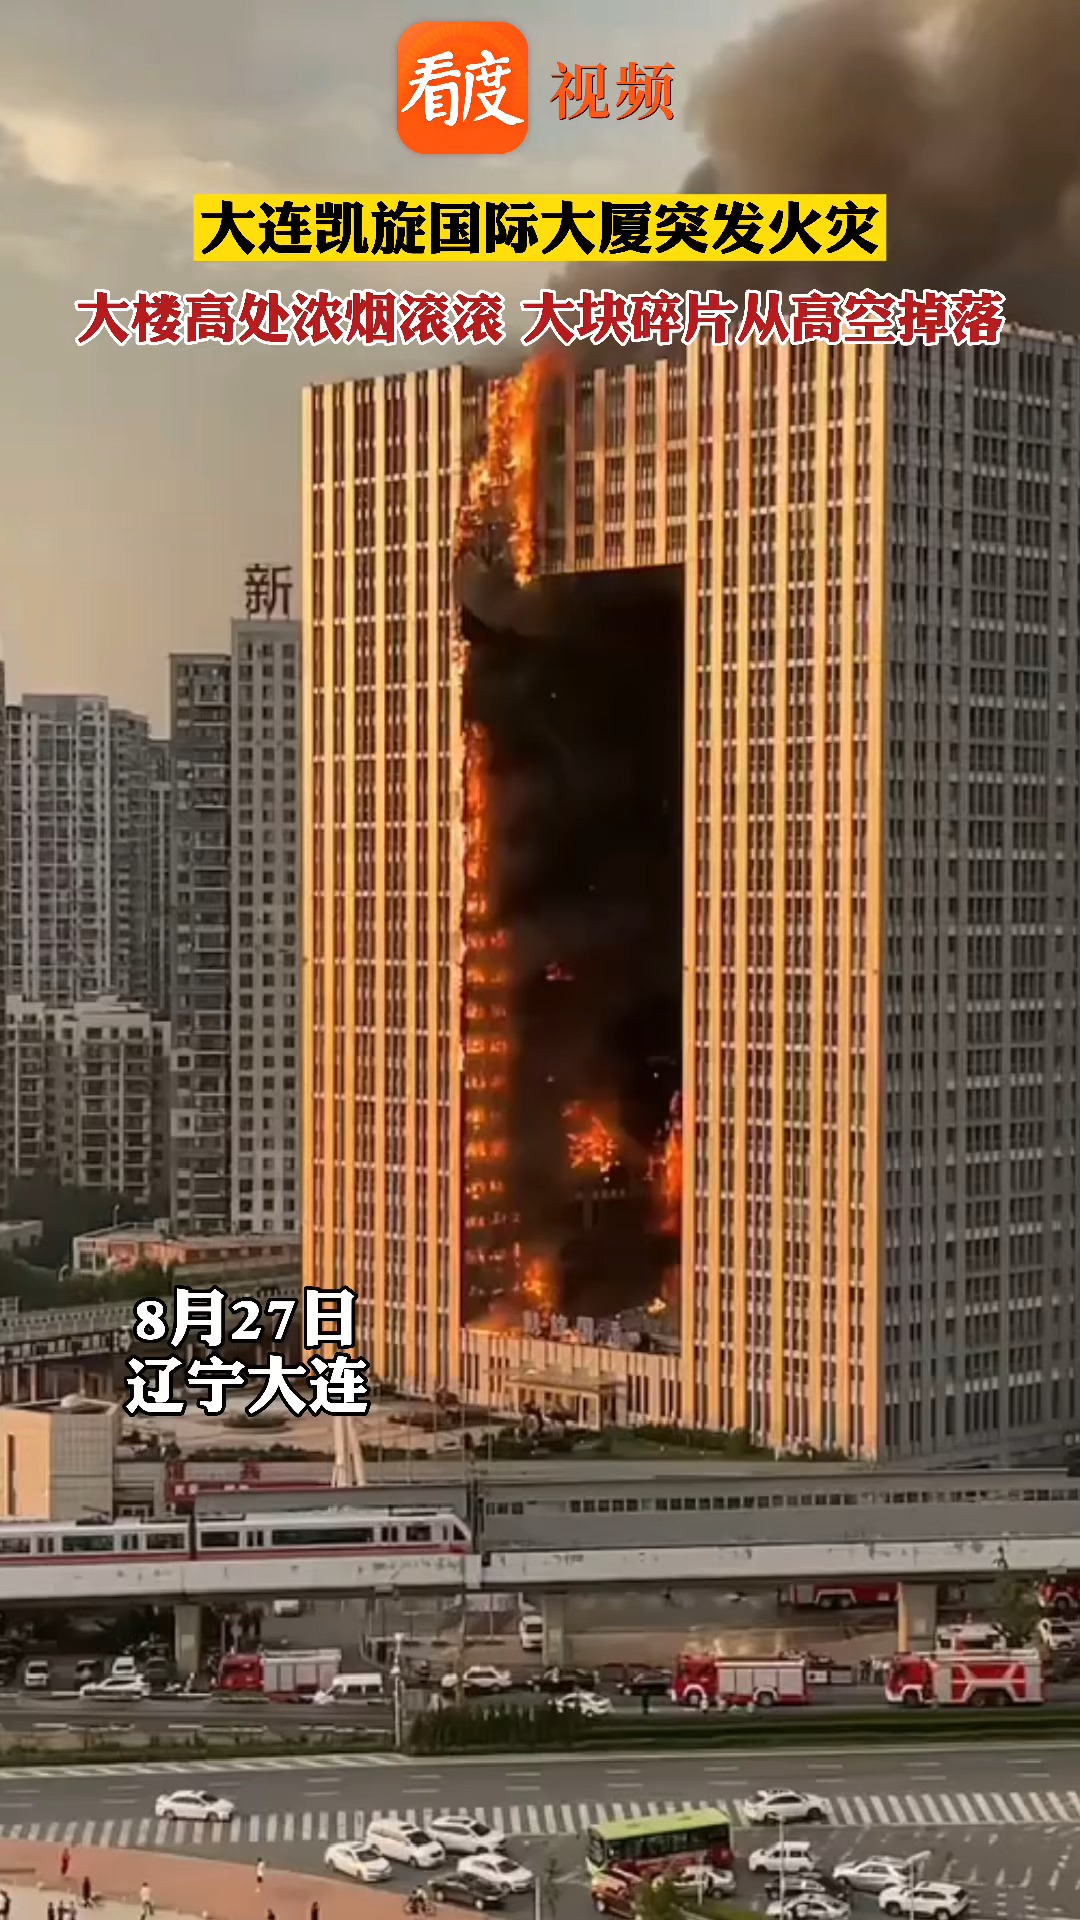 大连凯旋国际大厦突发火灾大楼高处浓烟滚滚大块碎片不断从高空掉落